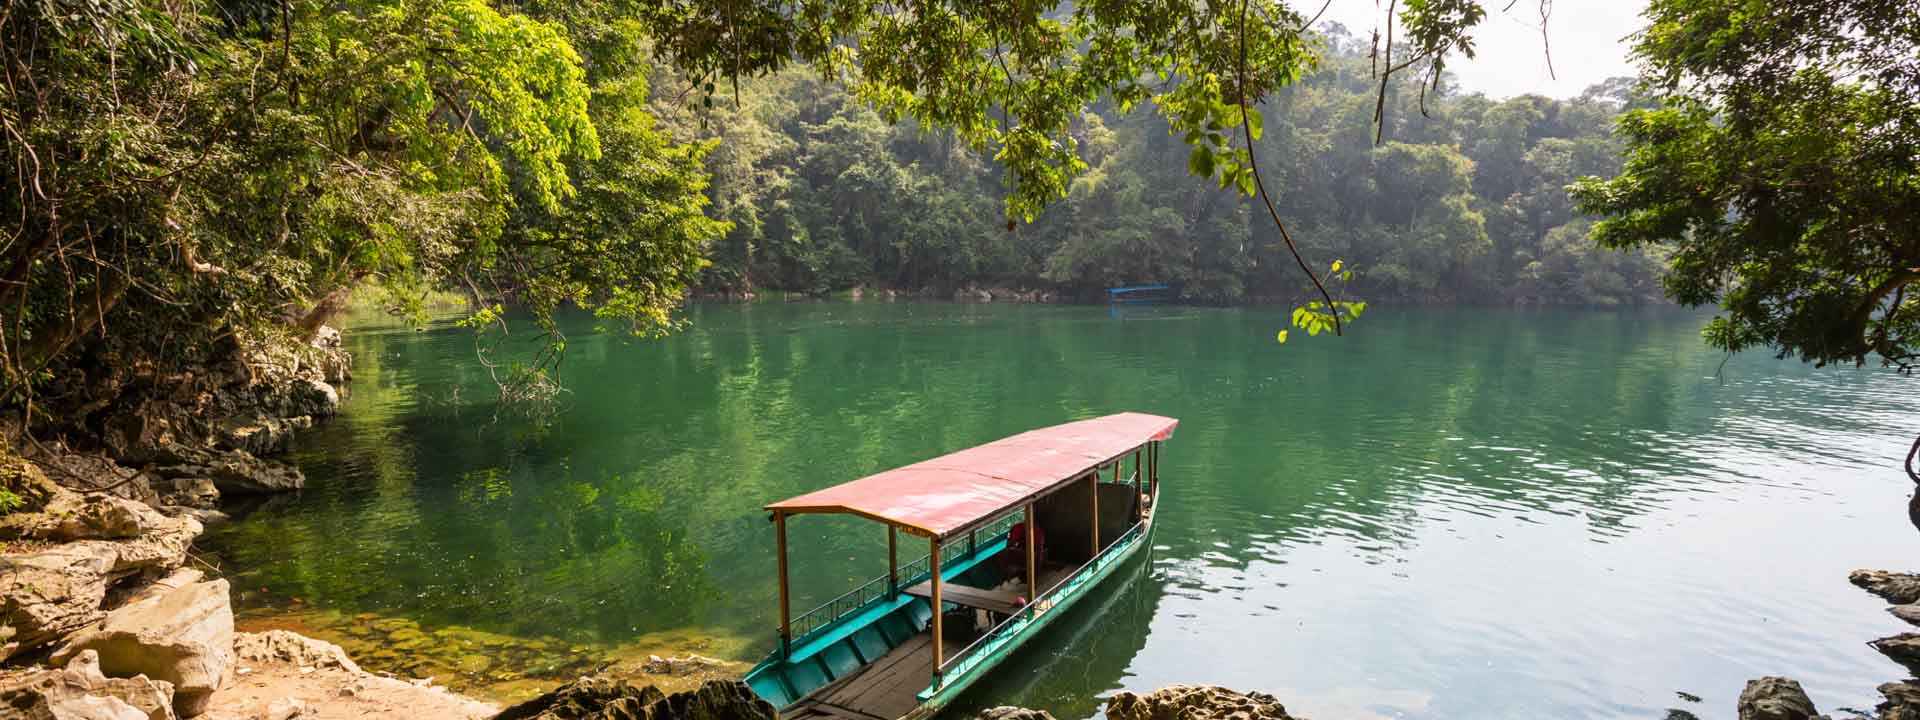 Immersion Dans La Nature Merveilleuse Au Vietnam 15 jours